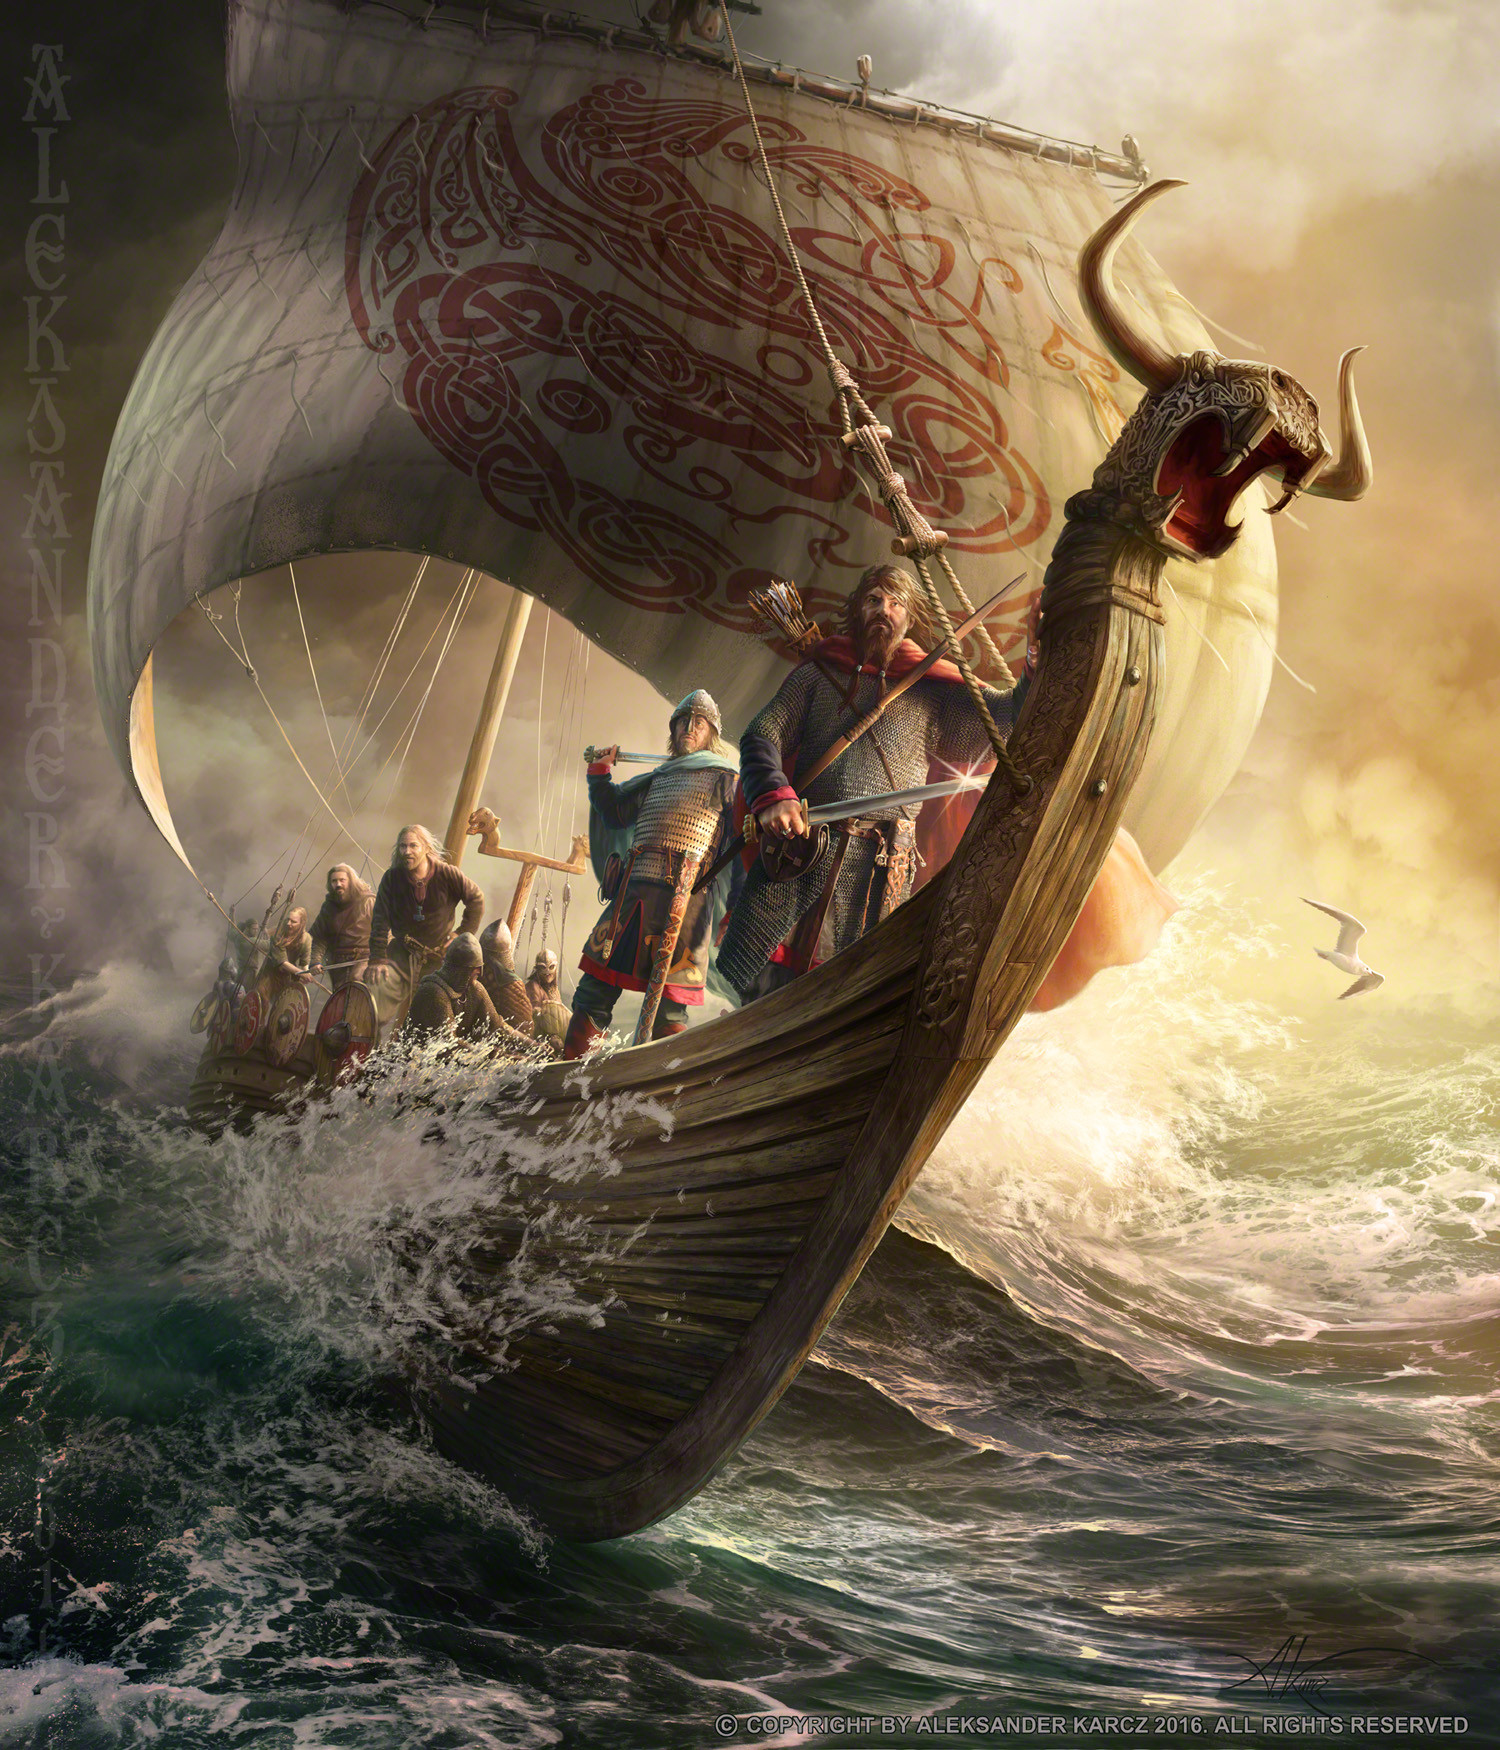 Картина ладьи. Дракар викингов. Викинги сражение дракар. Корабль викингов Drakkar. Ладья Драккар викингов.